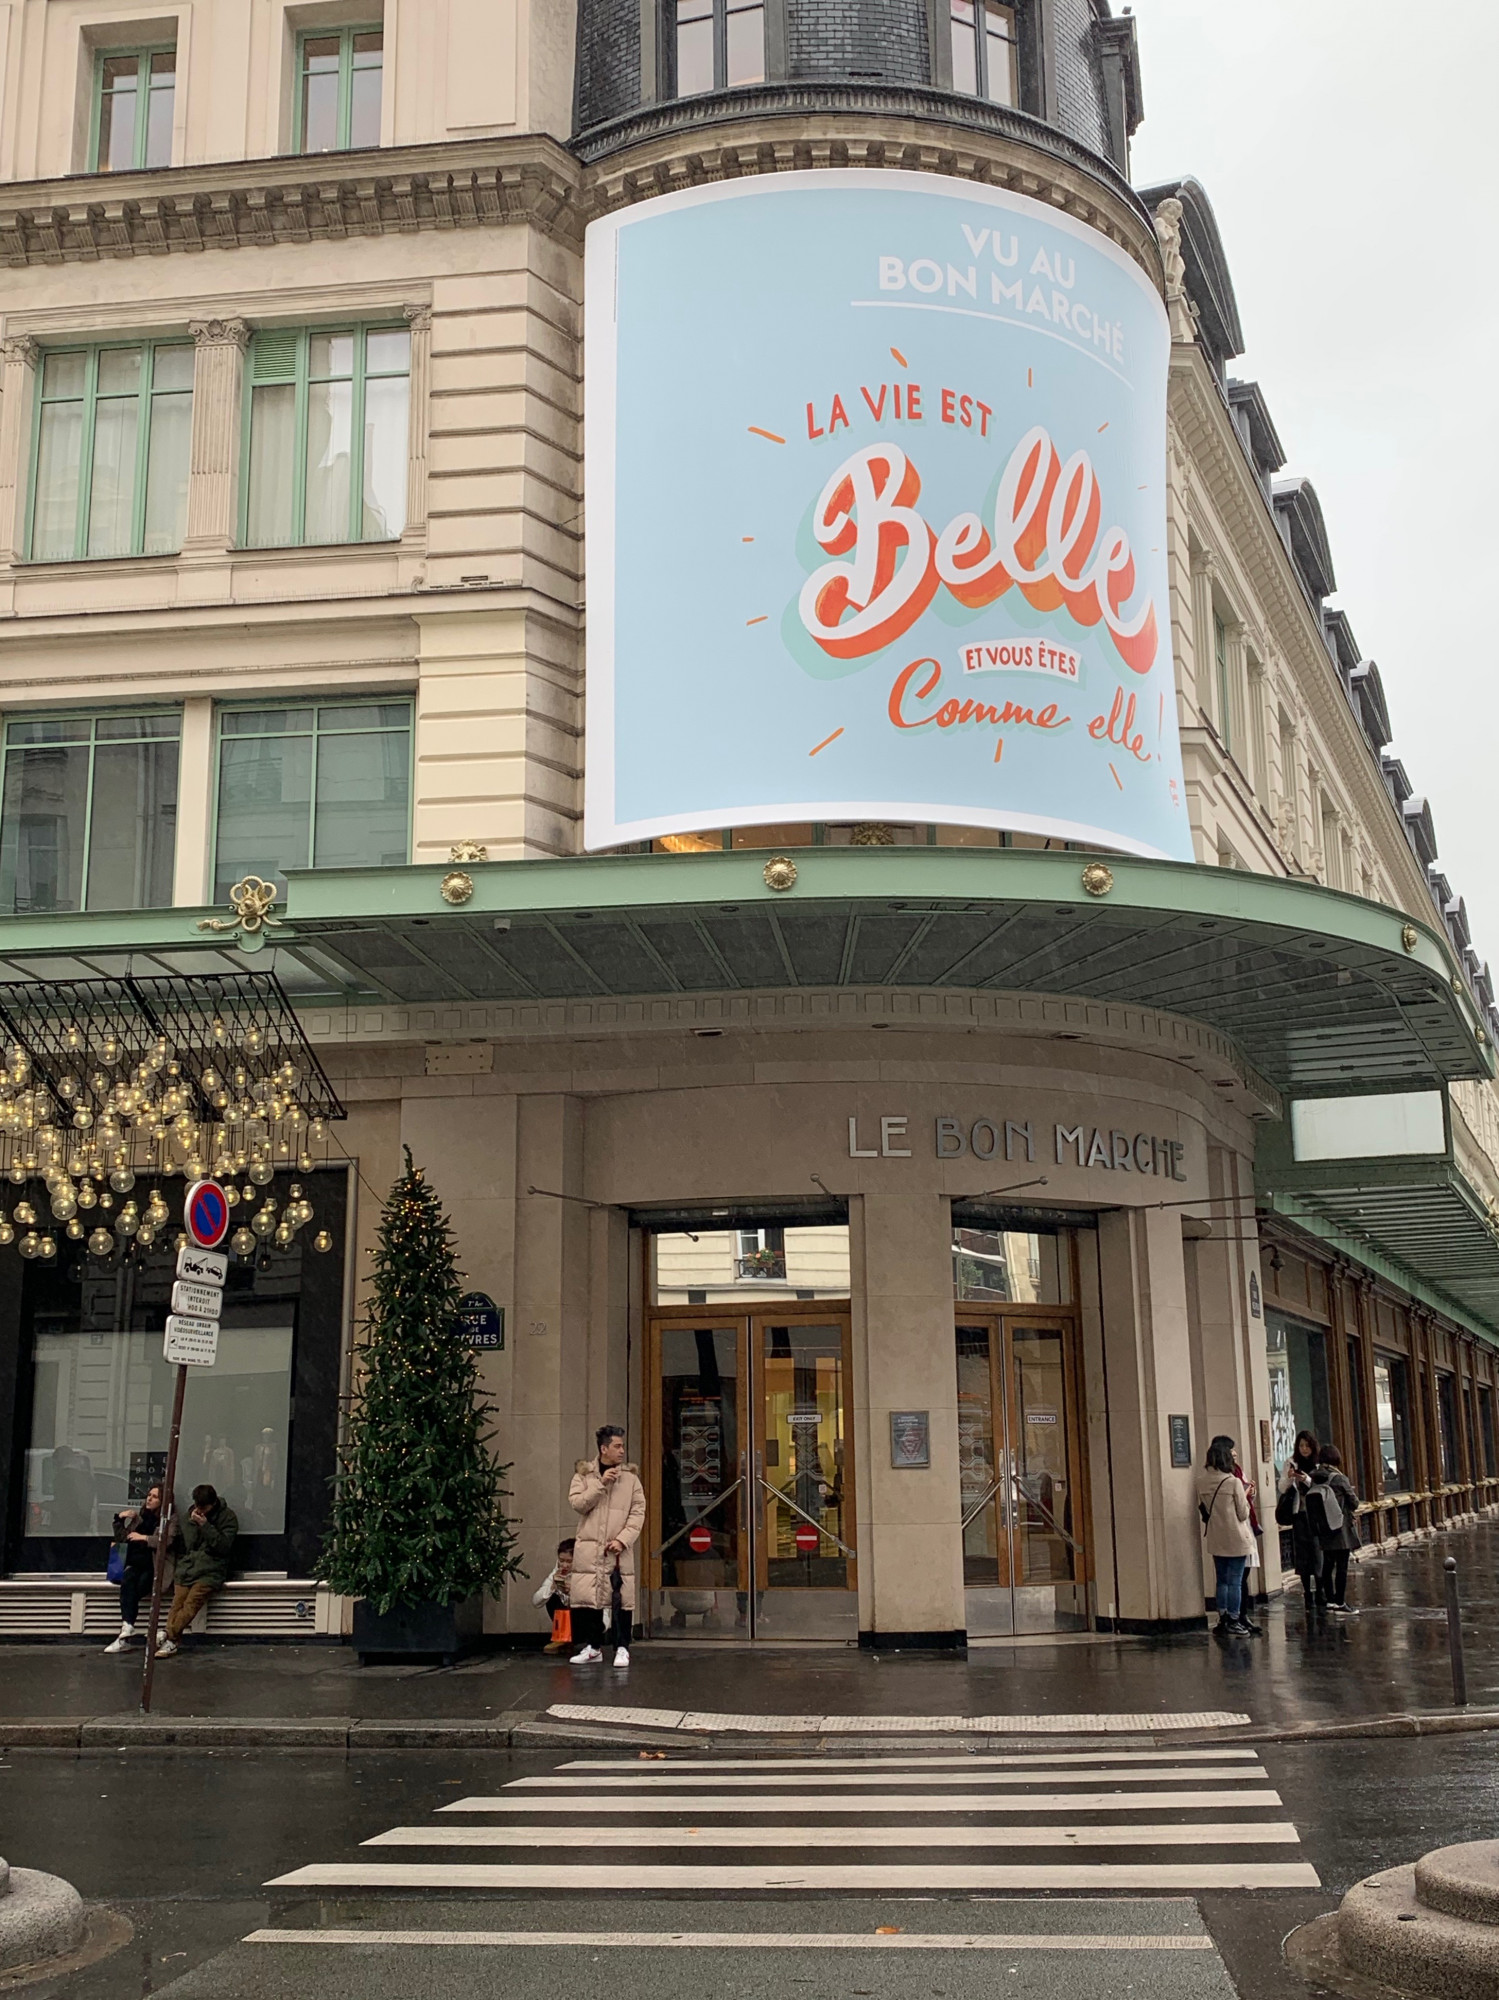 Le Bon Marche Department Store in Paris: Complete Guide